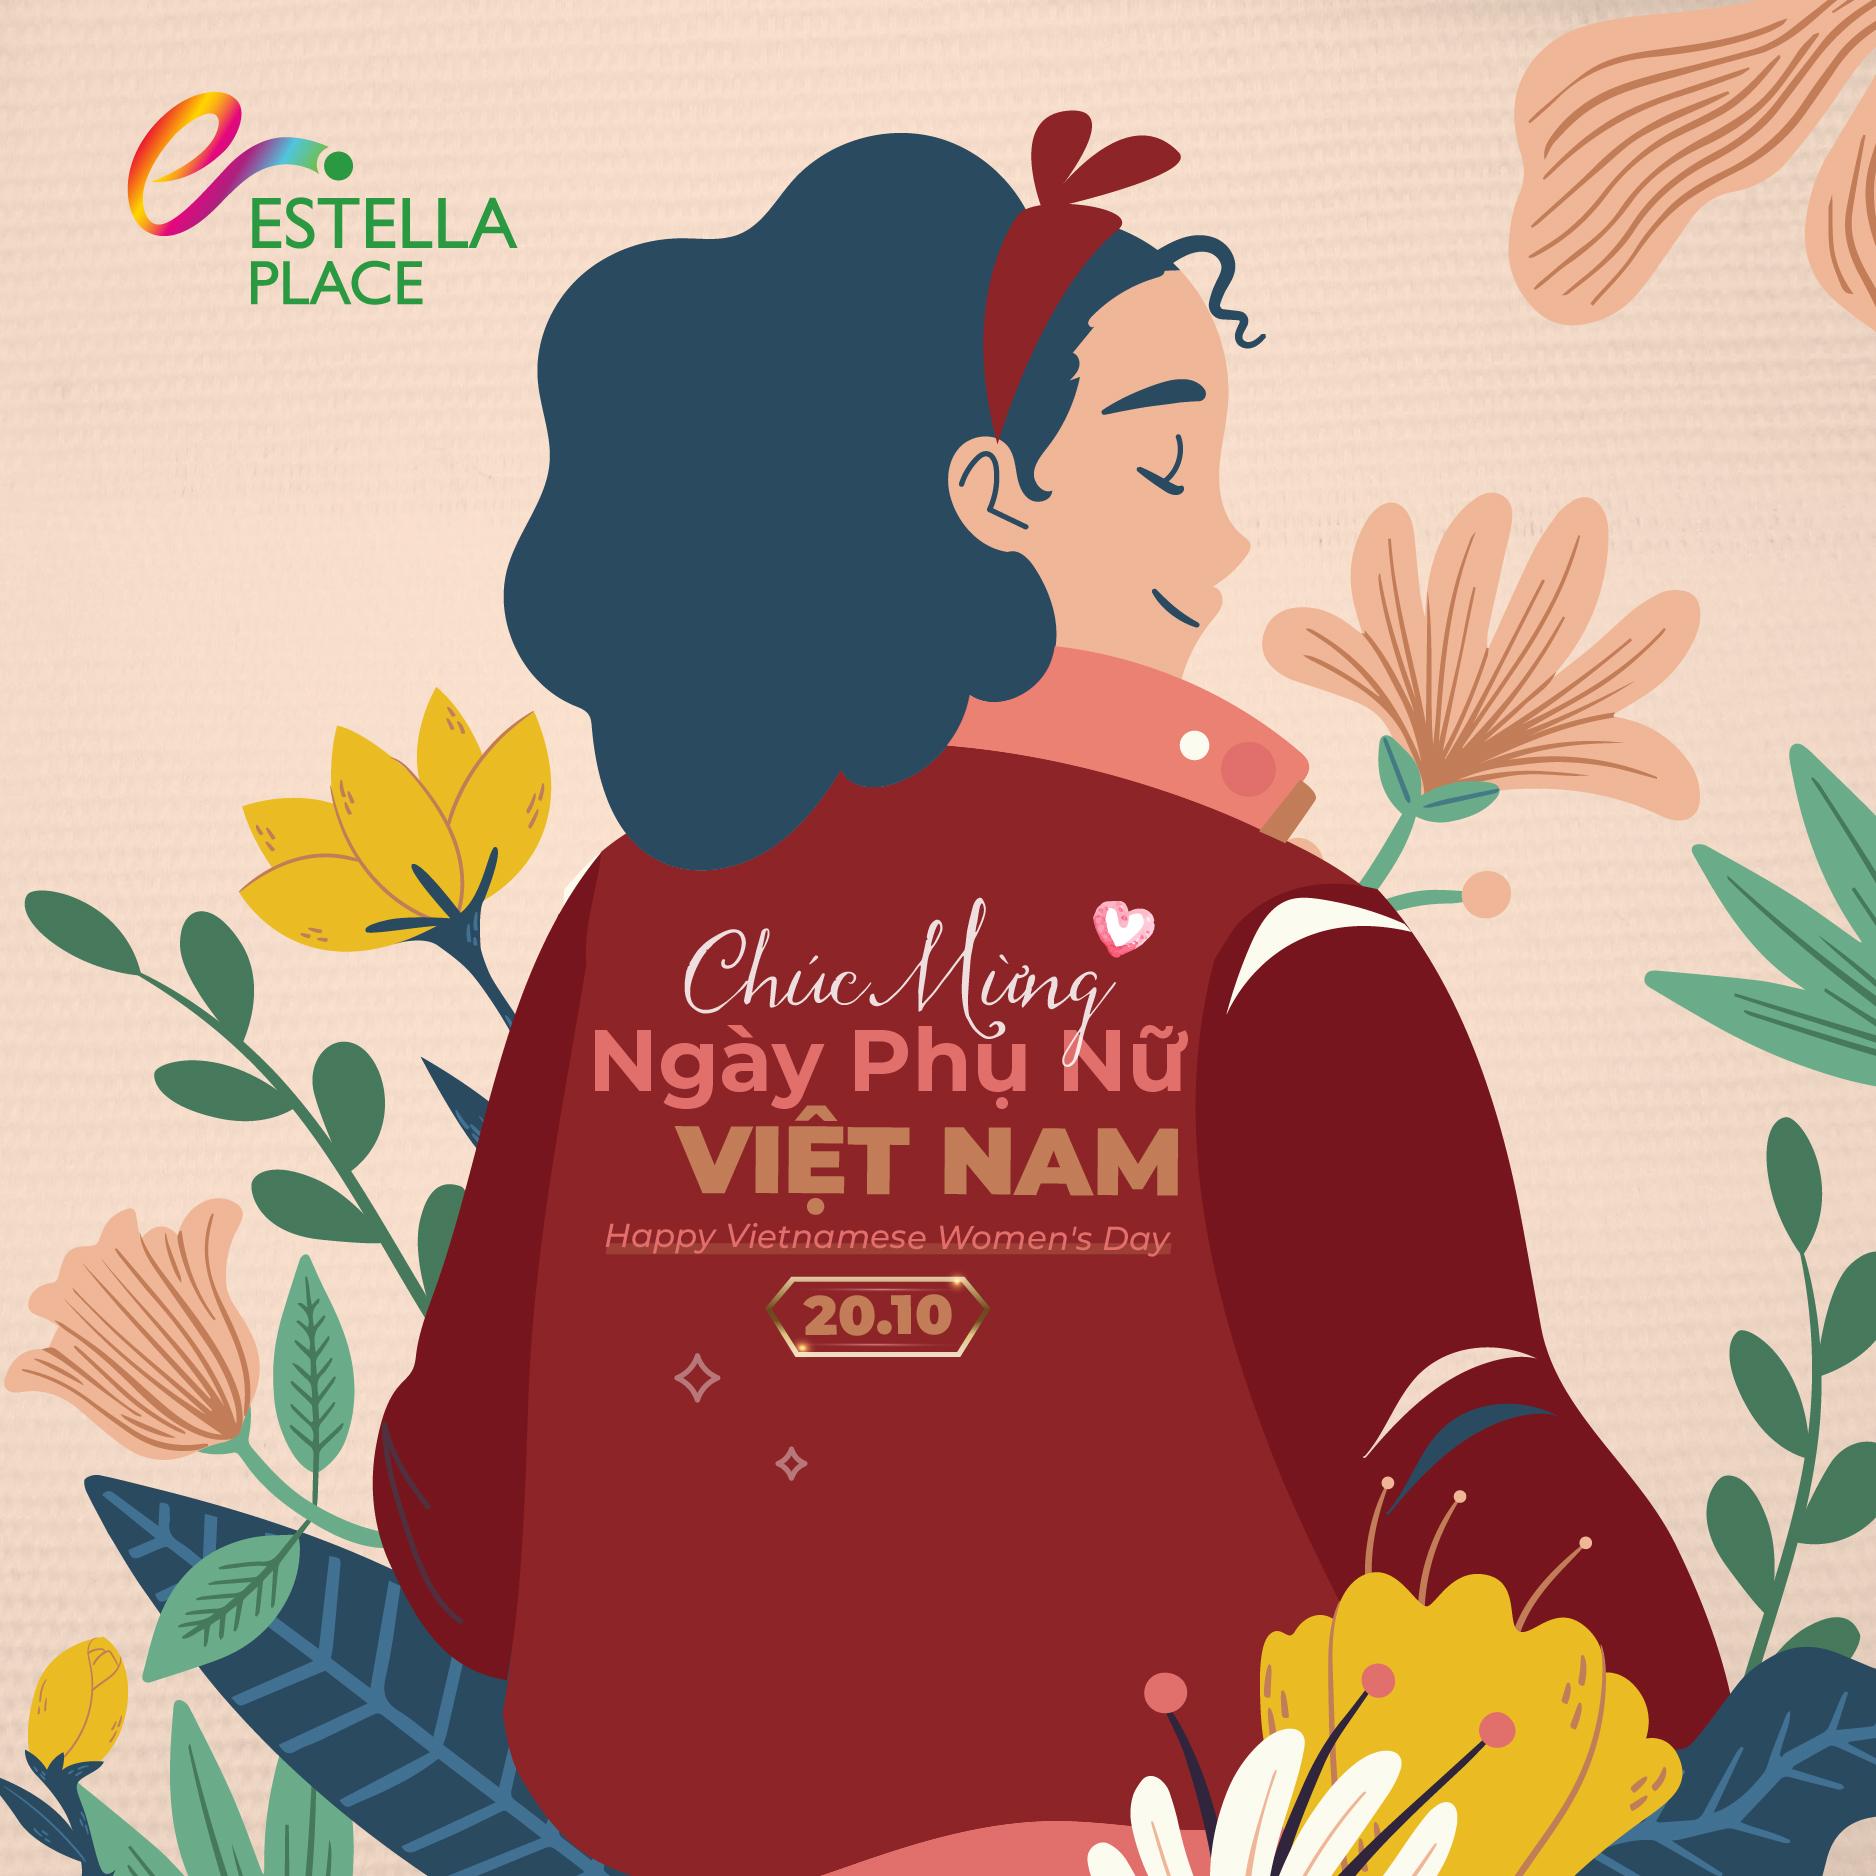 💋 Chúc mừng ngày phụ nữ Việt Nam!